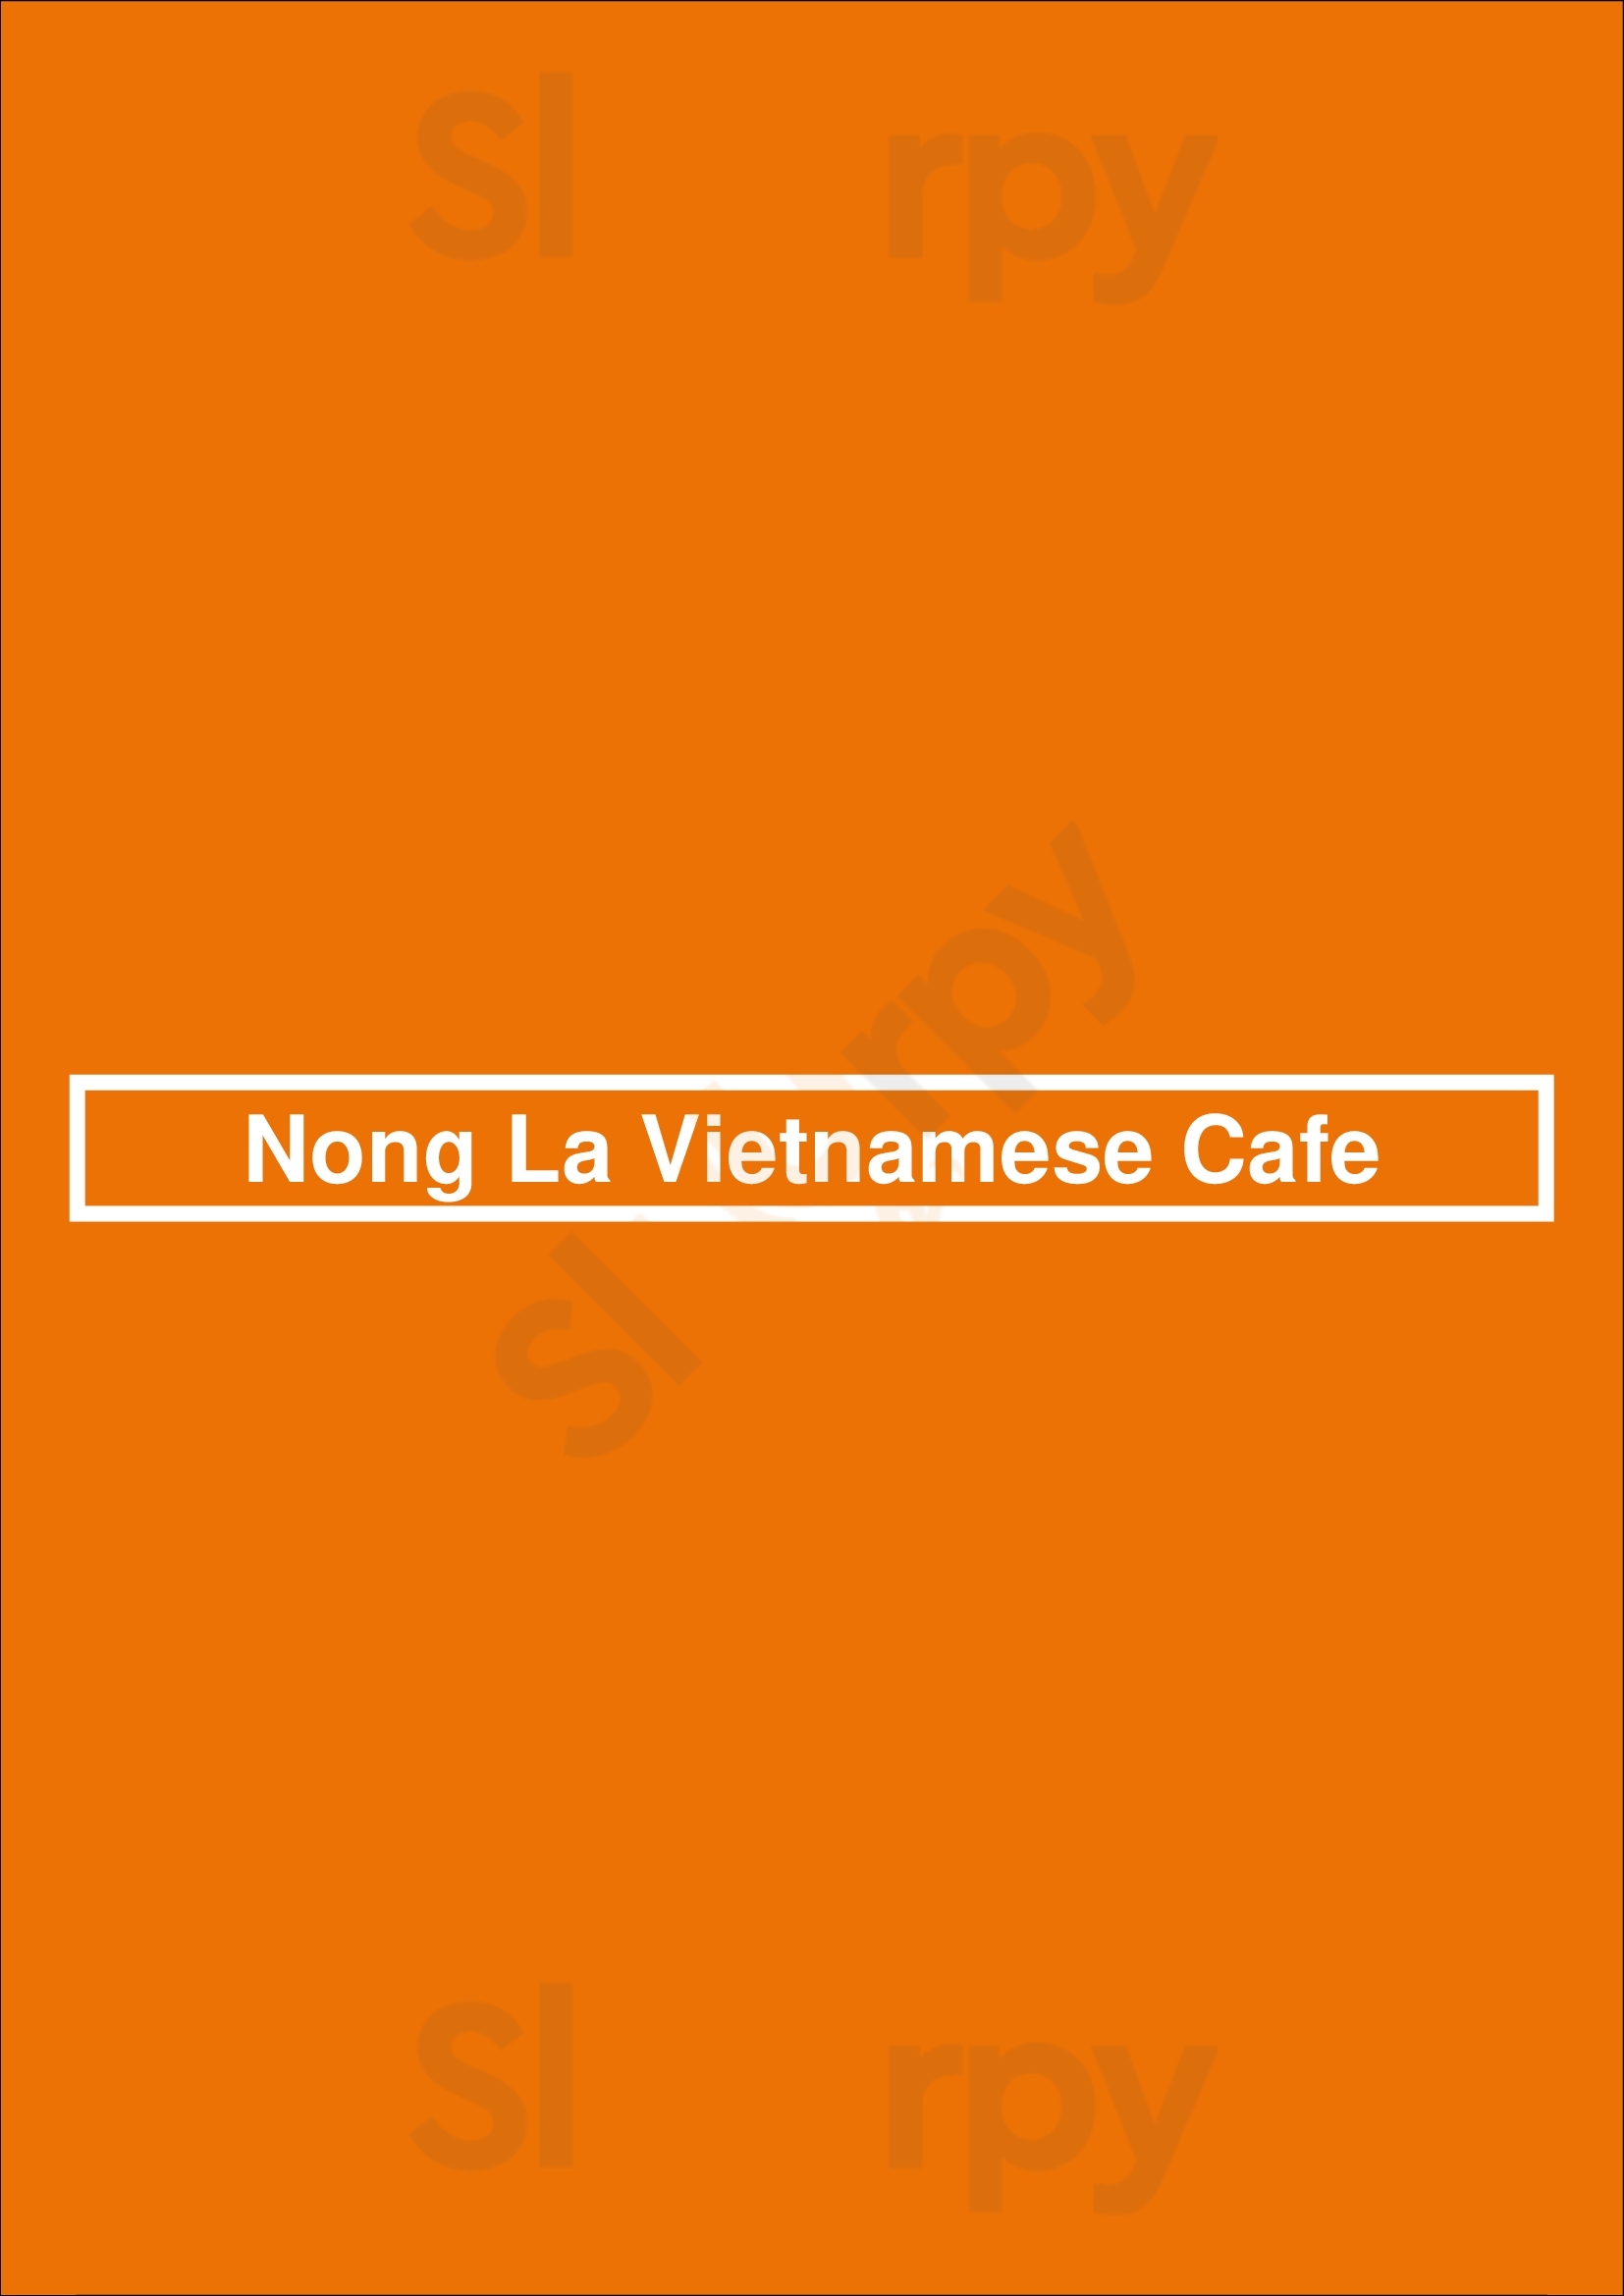 Nong La Vietnamese Cafe Los Angeles Menu - 1